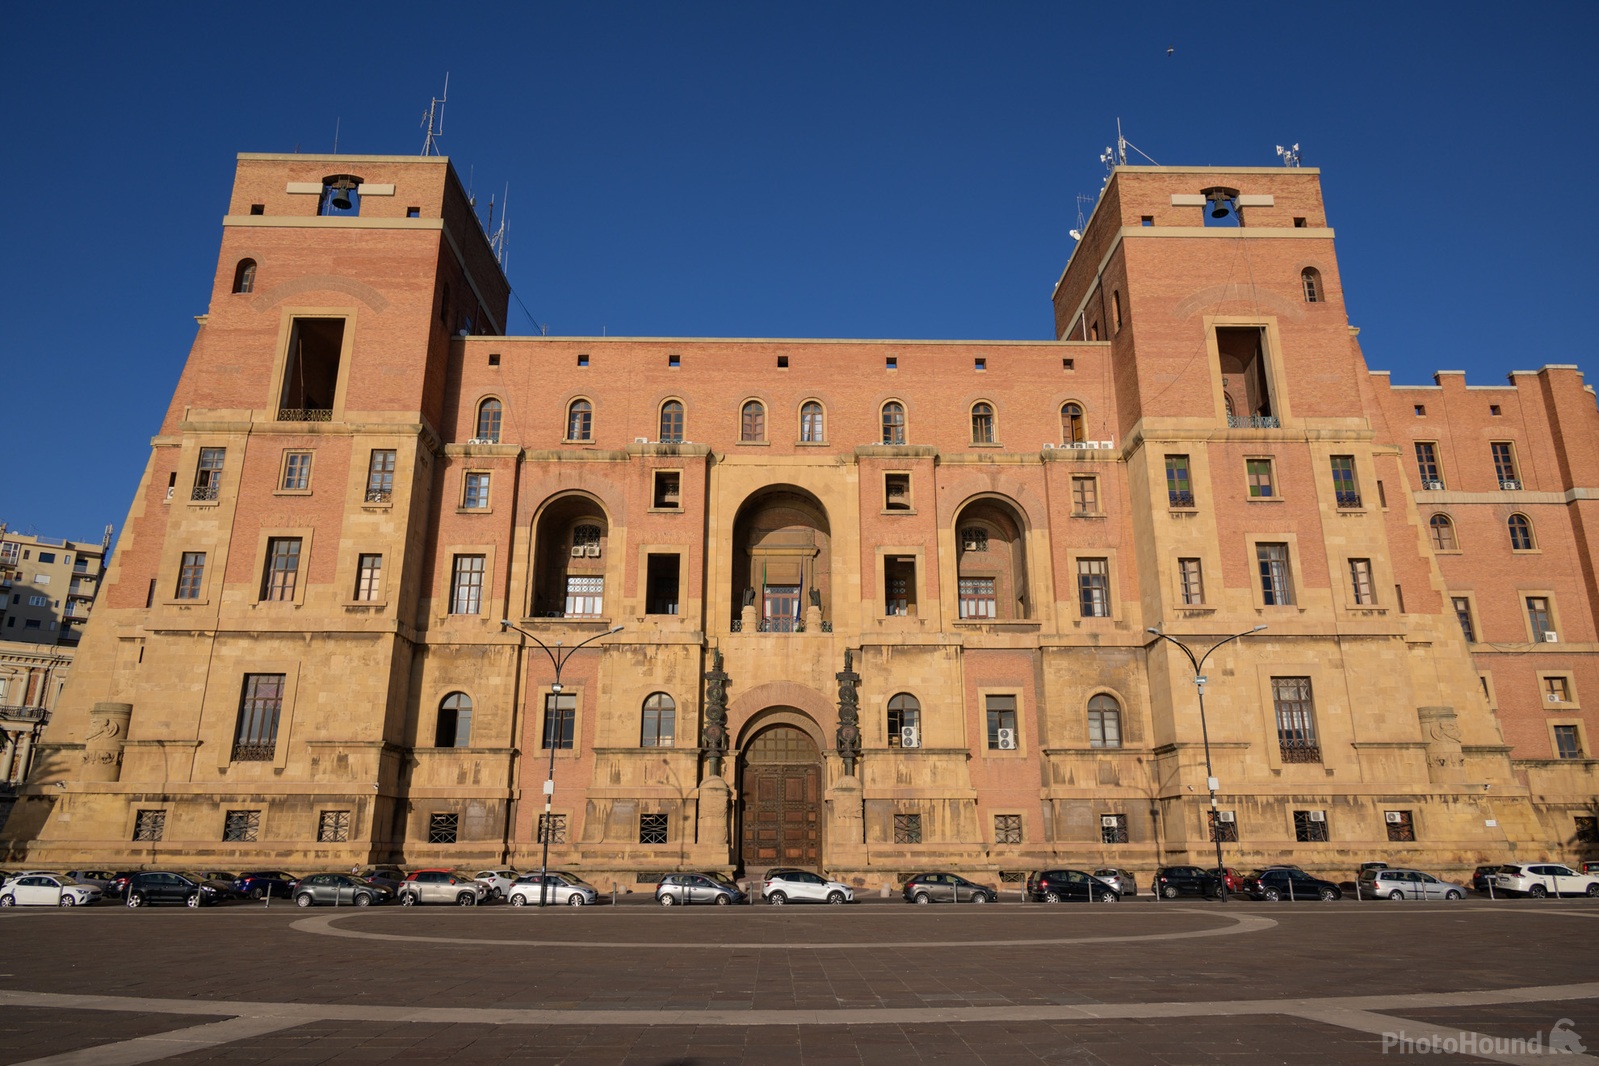 Image of La Rotonda & Palazzo del Governo by Luka Esenko